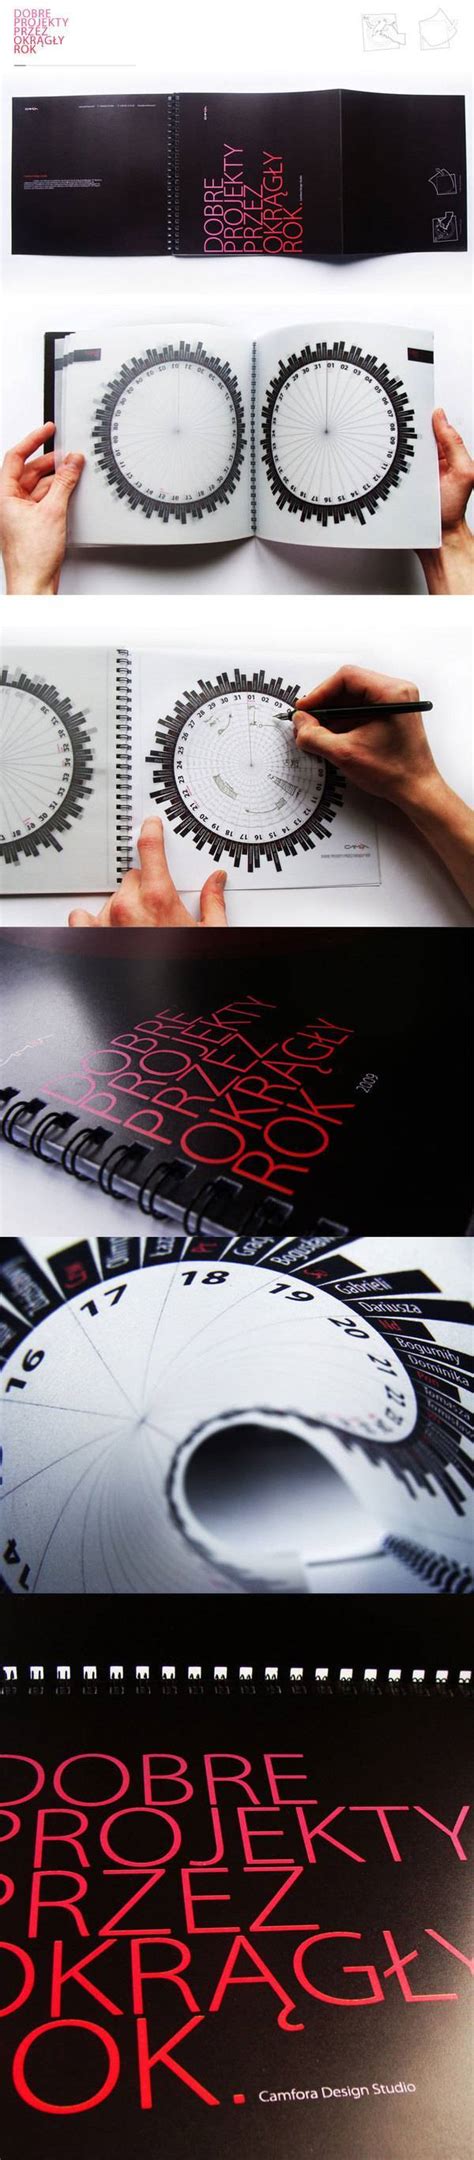 平面版式排版及文字设计经典书籍A Manual of Design